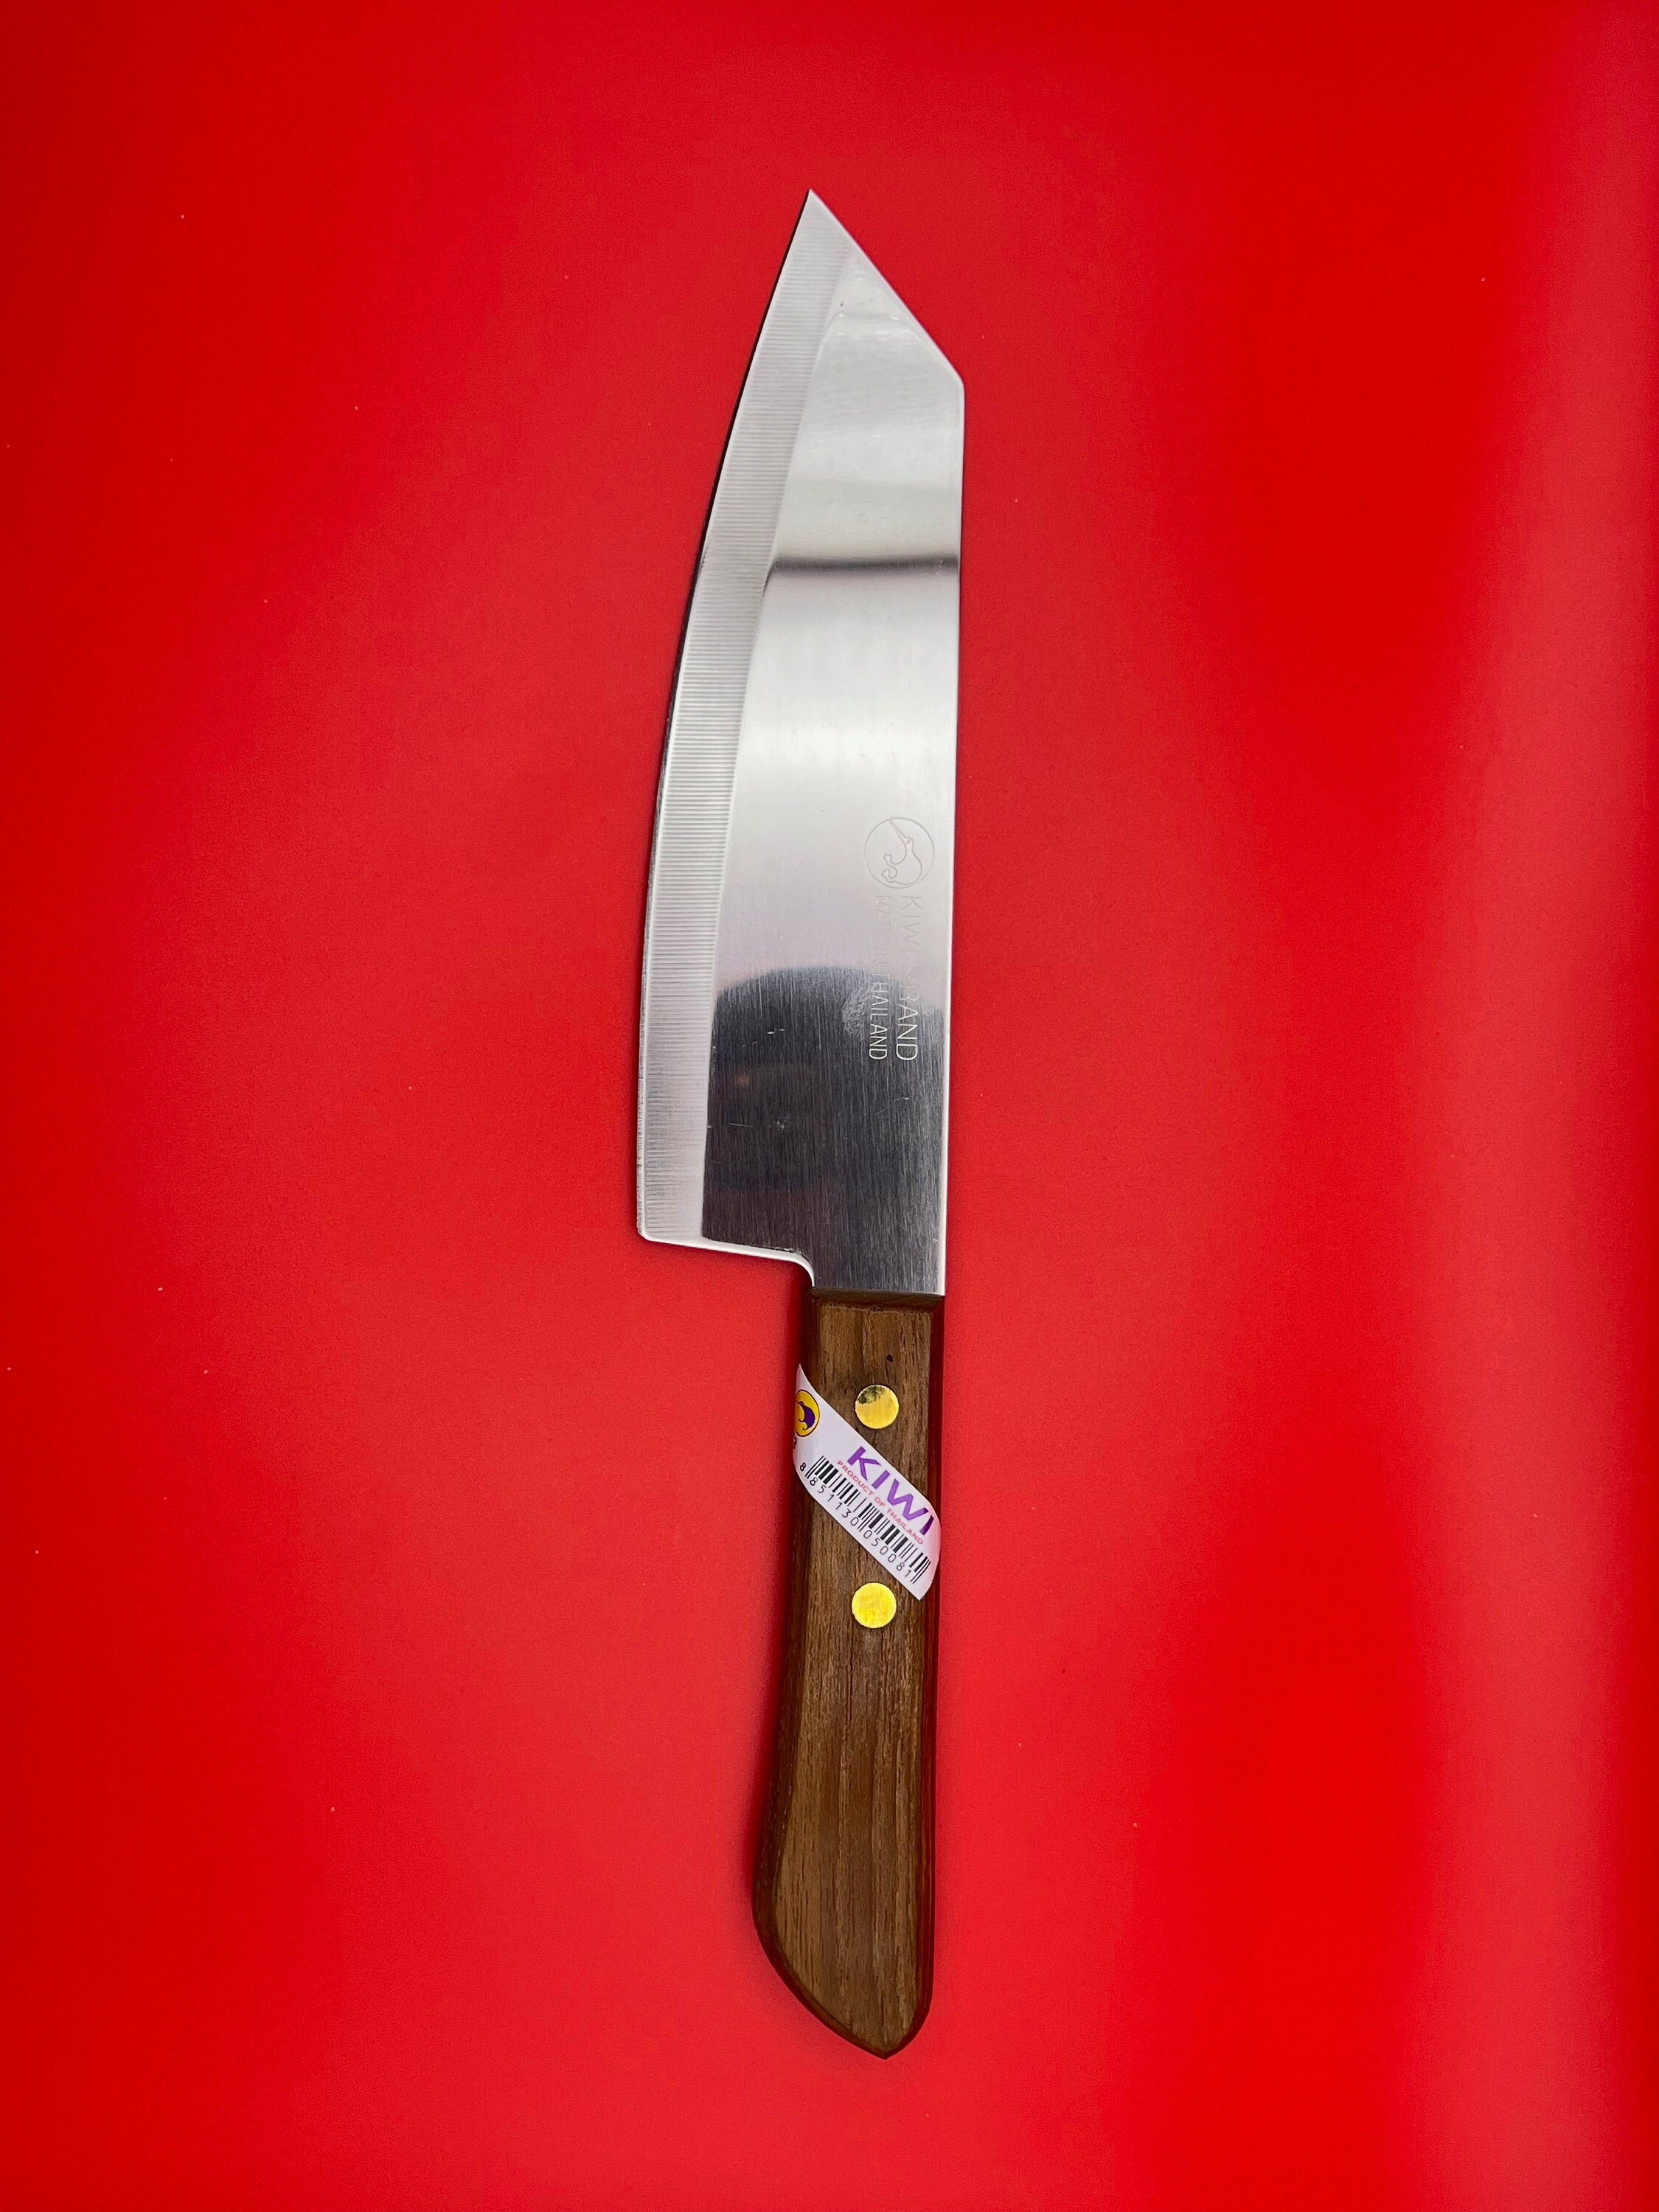 Ergo Kiwi Knife 2.0 